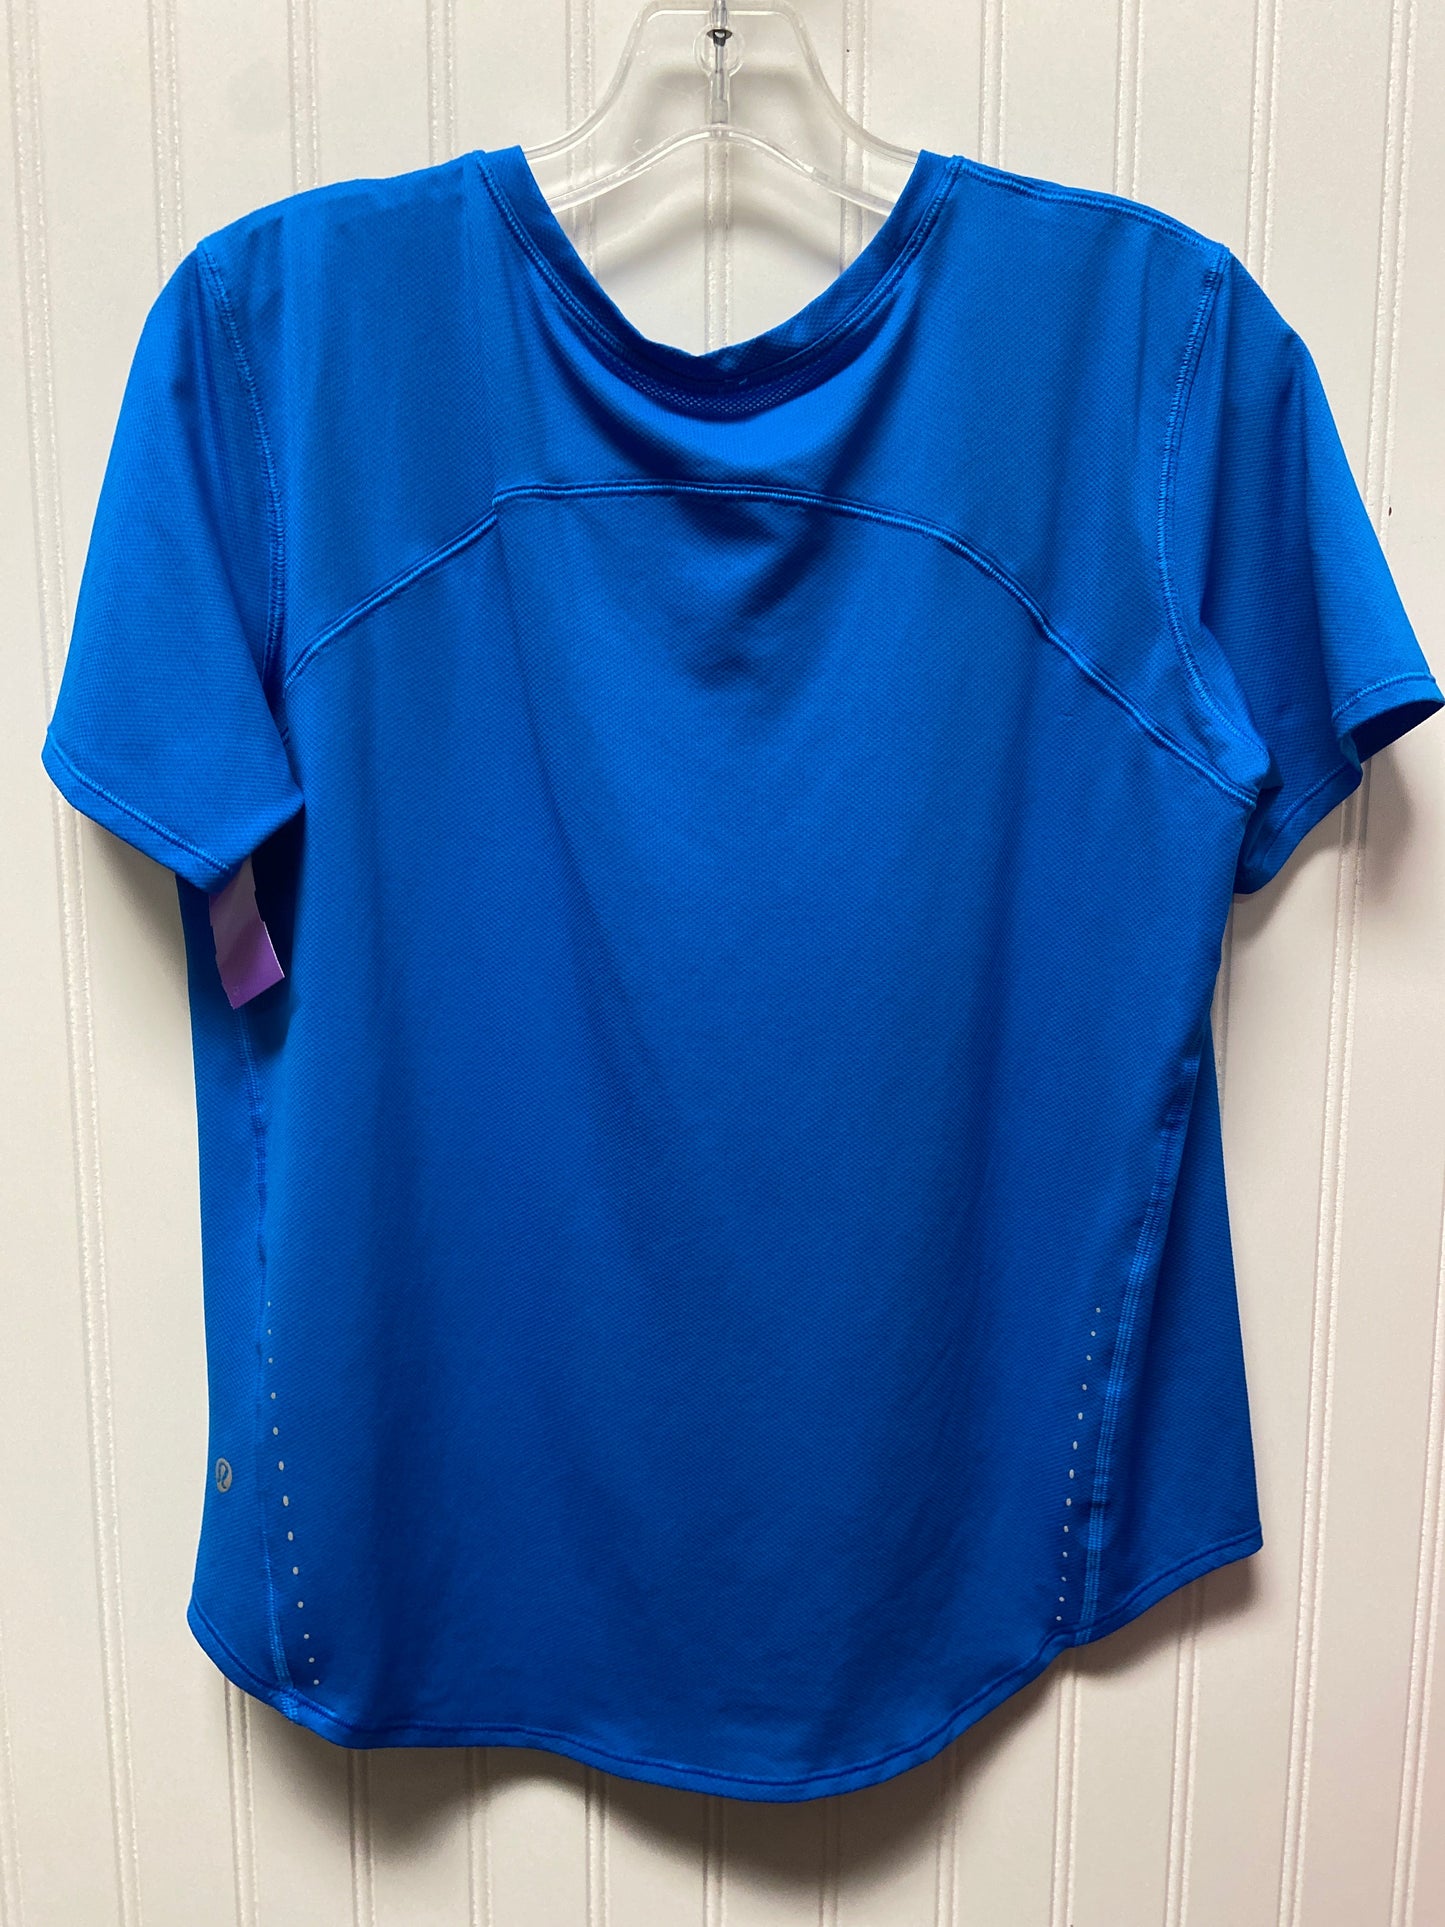 Blue Athletic Top Short Sleeve Lululemon, Size 6